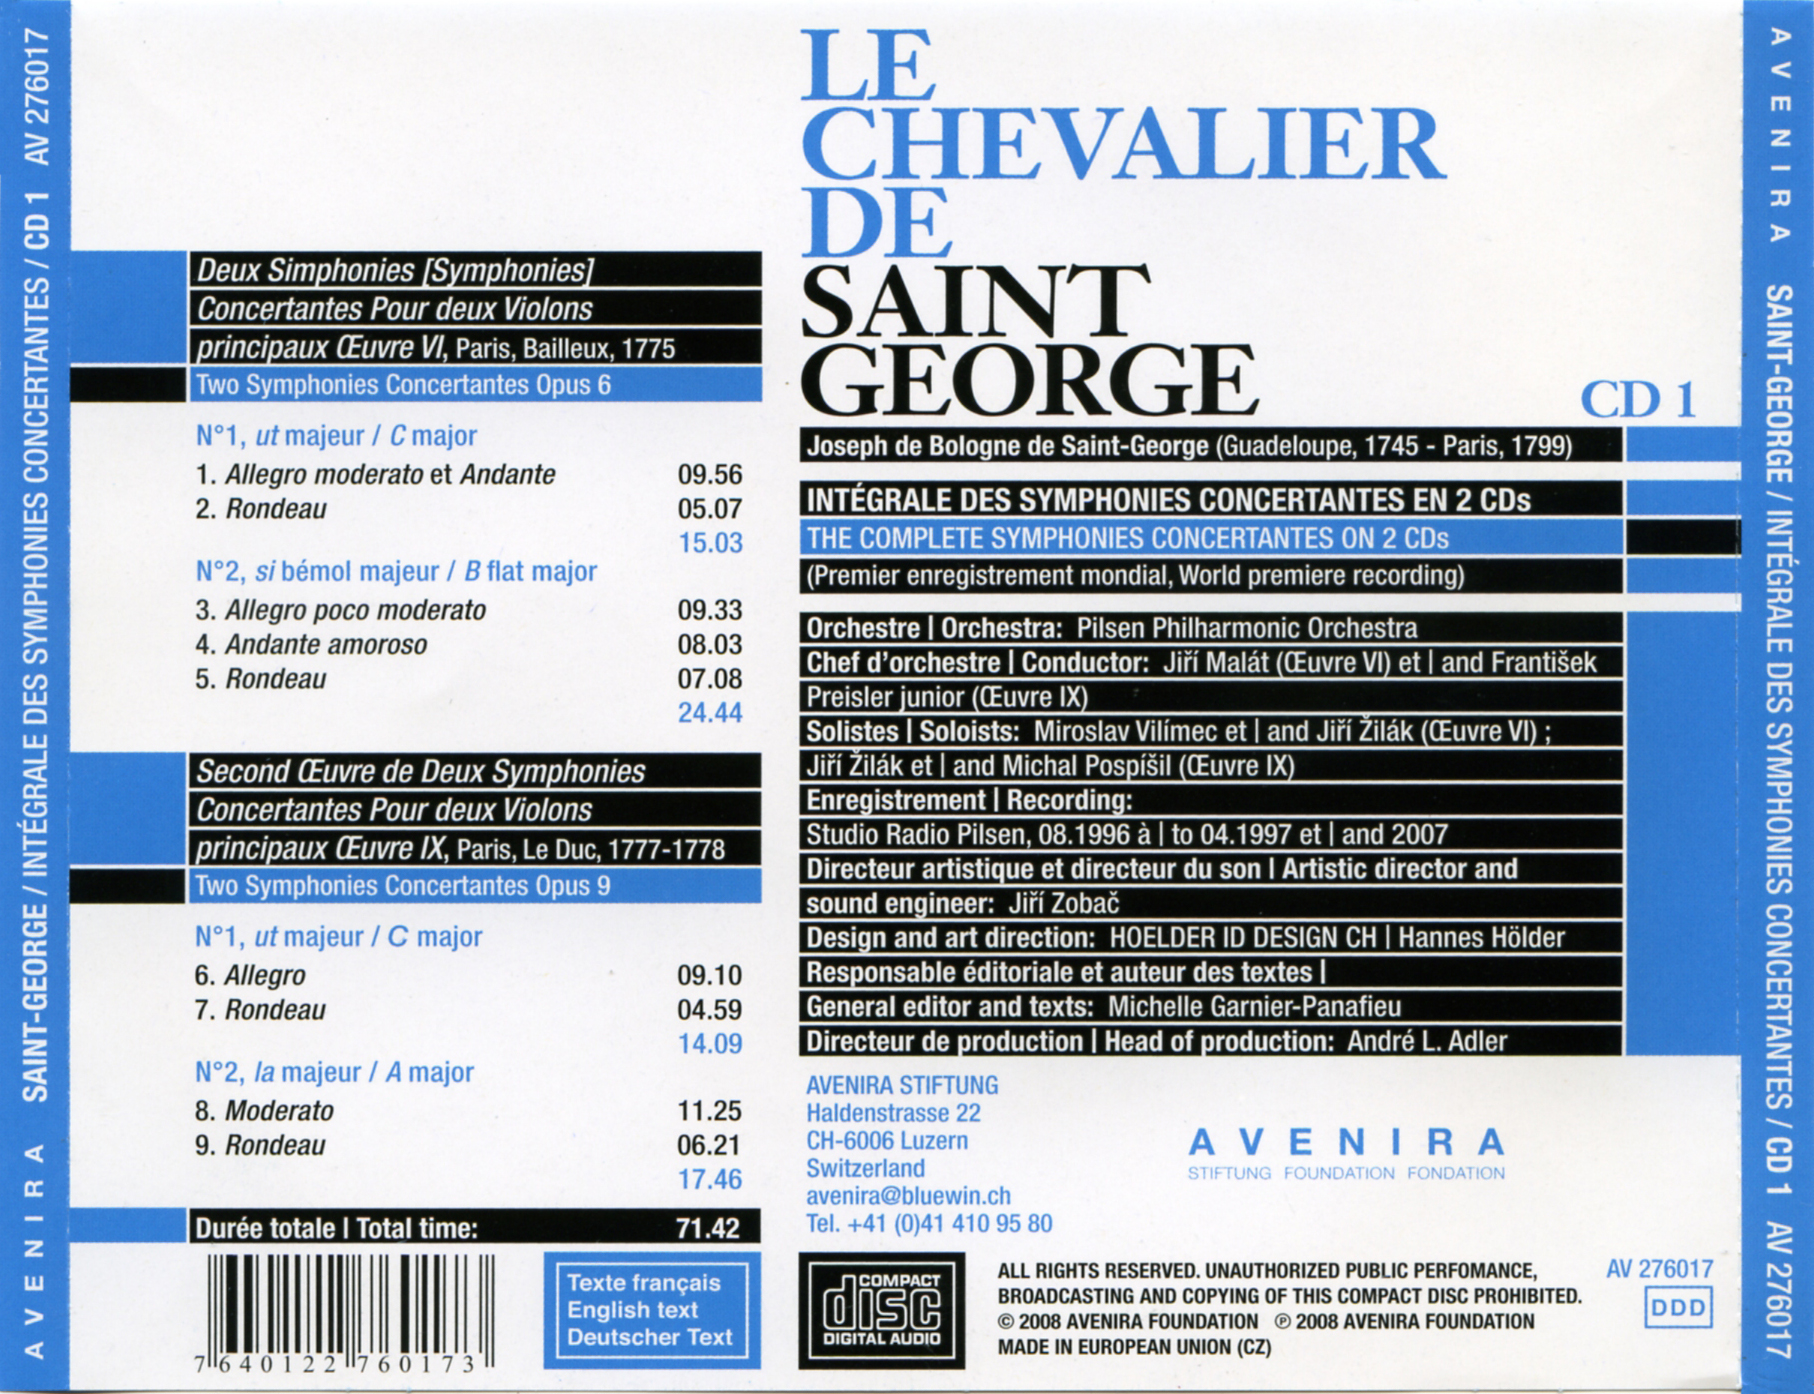 Chevalier de Saint-George - Complete Symphonies Concertantes